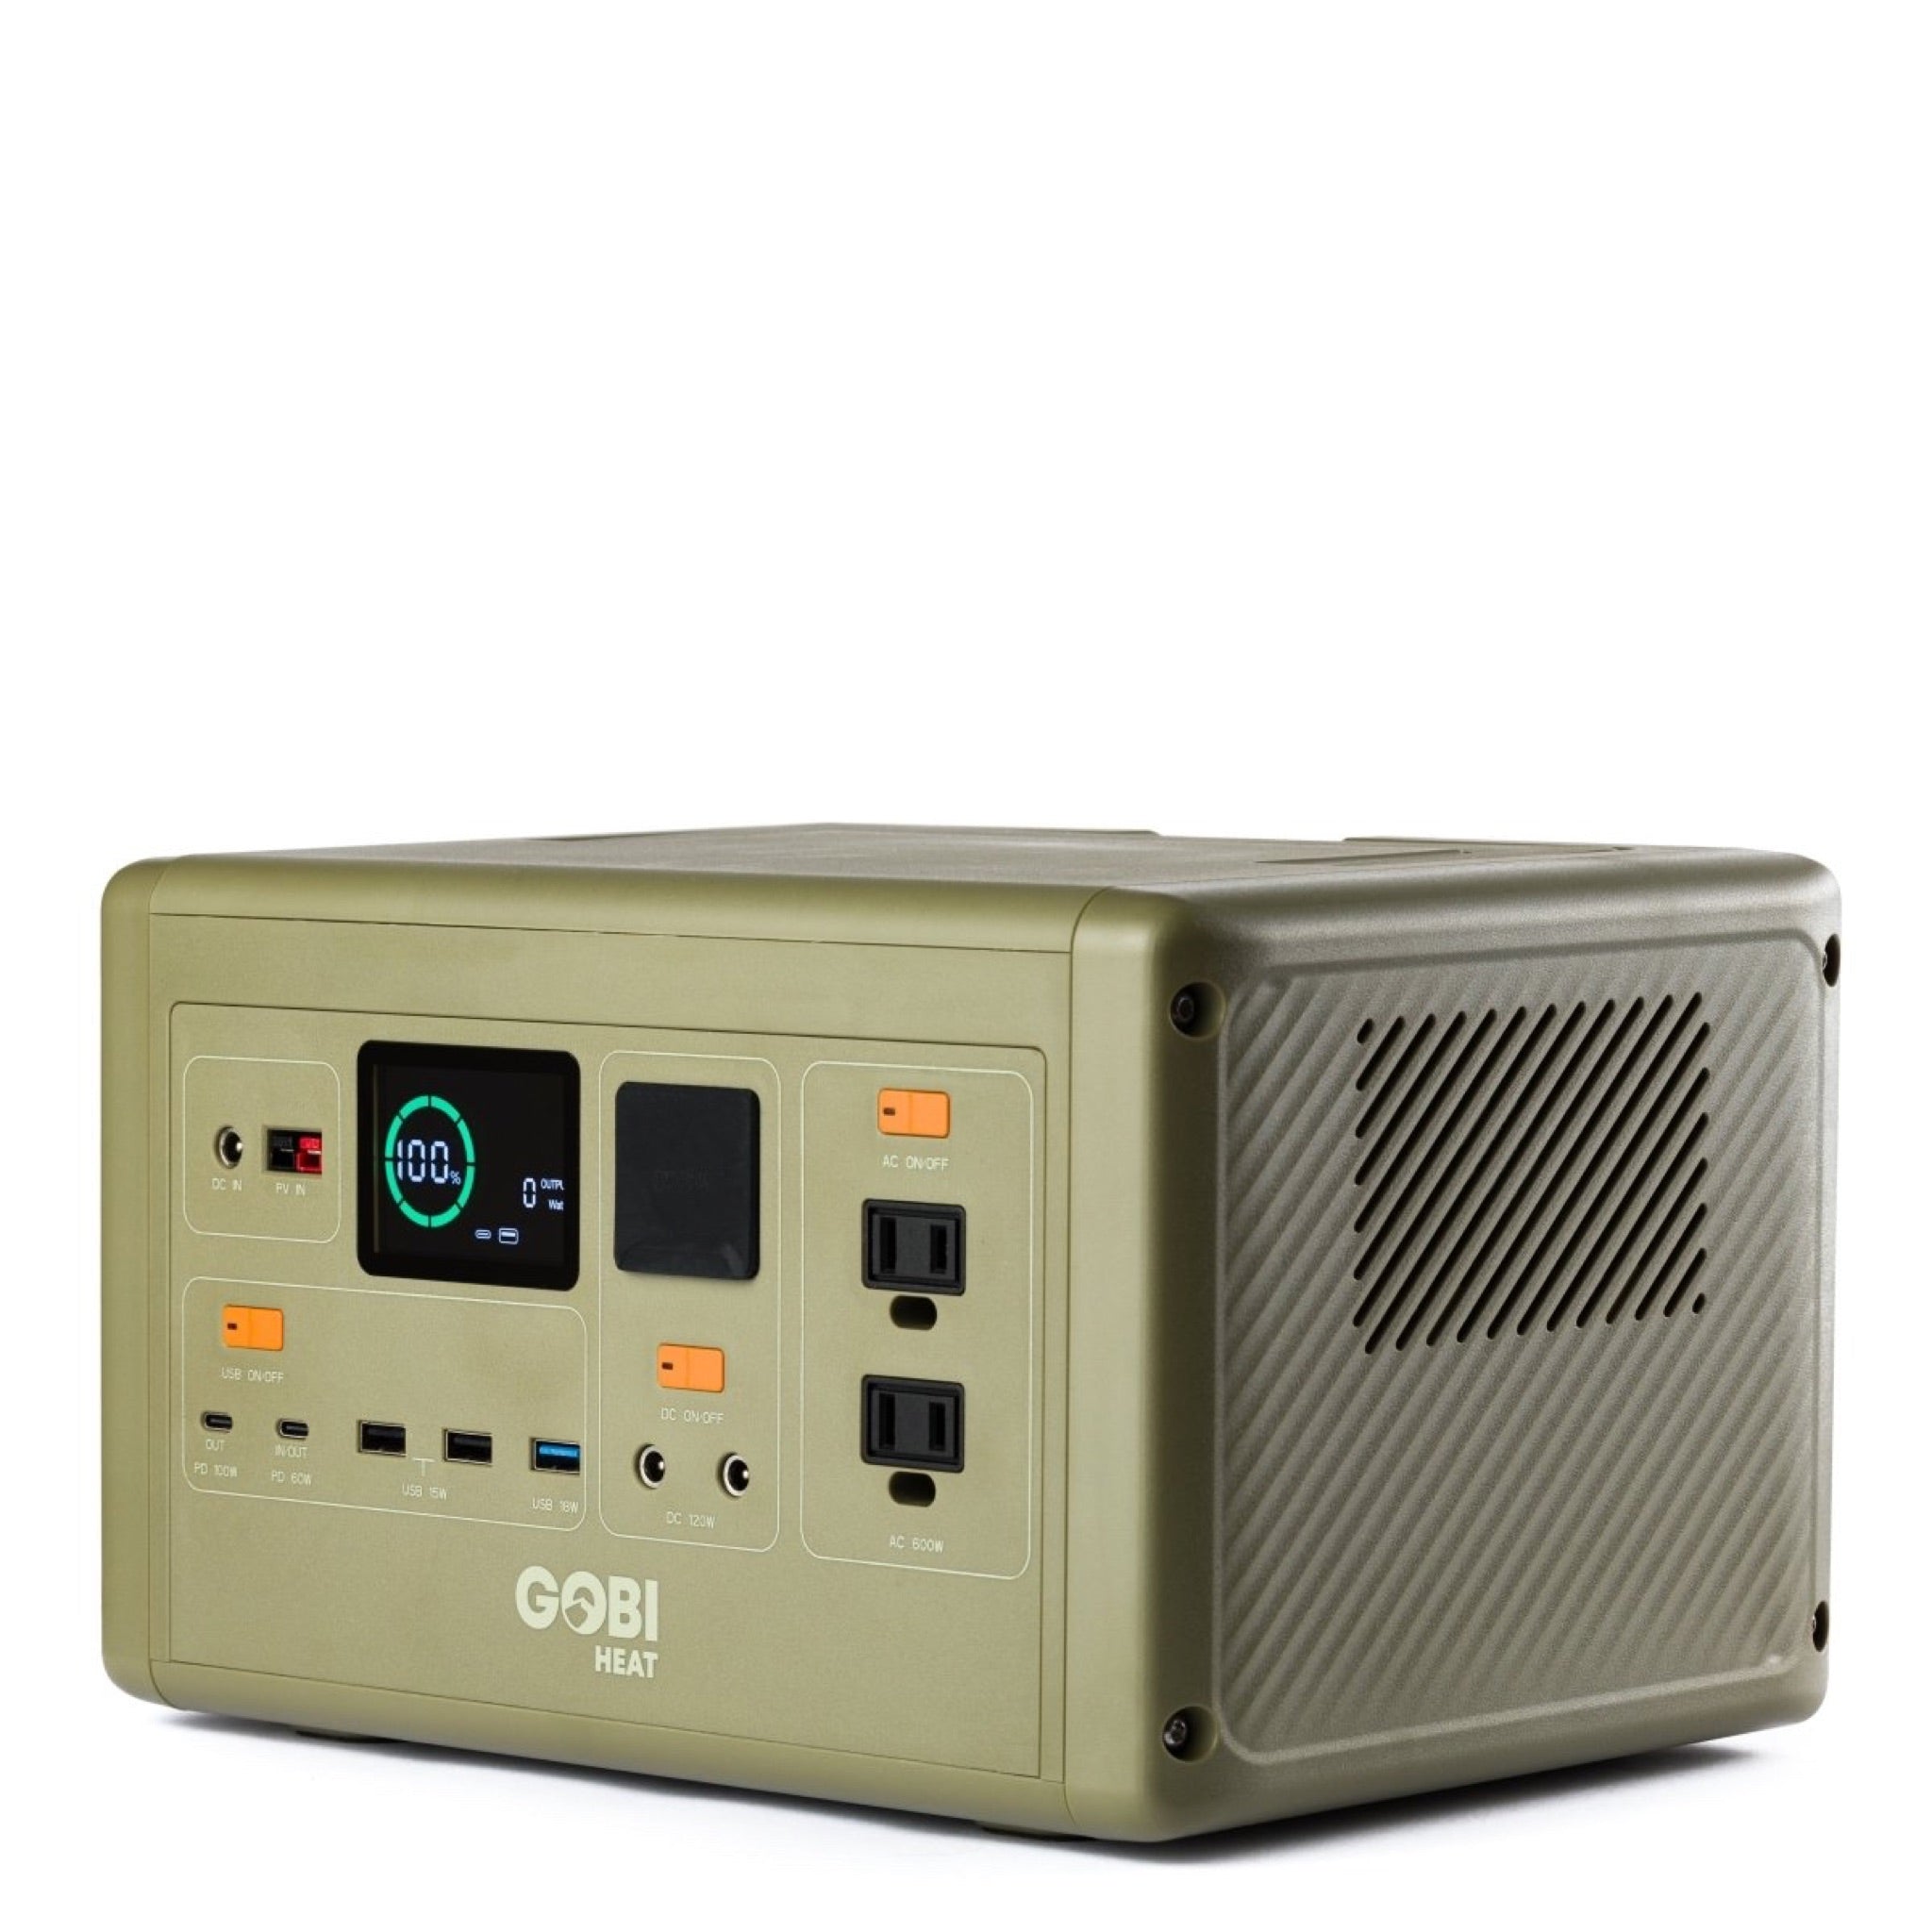 CORE 614W Portable Power Station - Gobi Heat